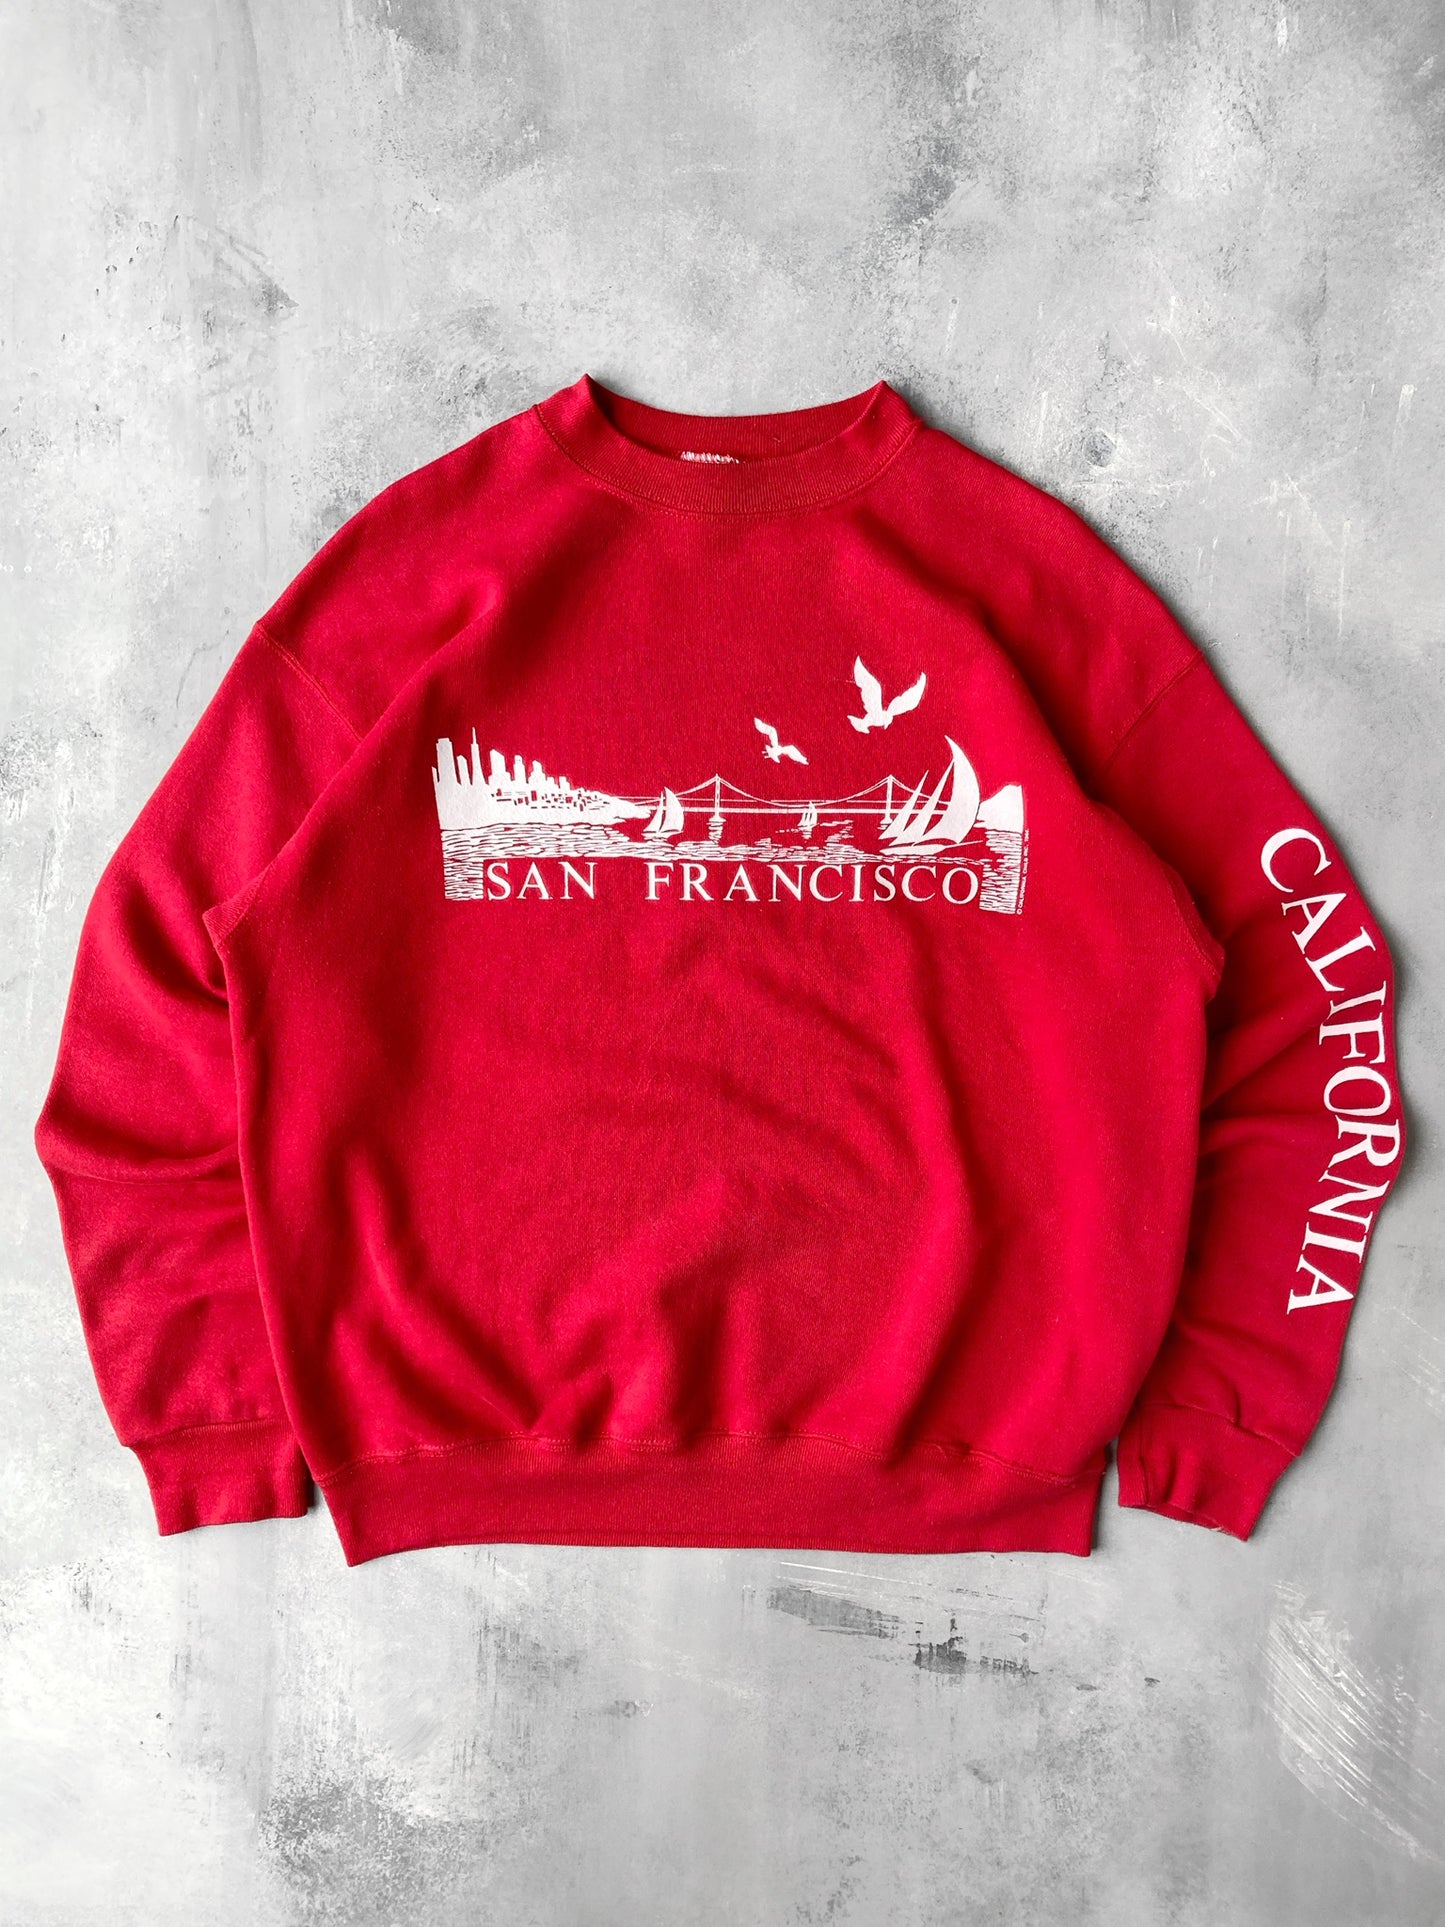 San Francisco California Crewneck '84 - Large